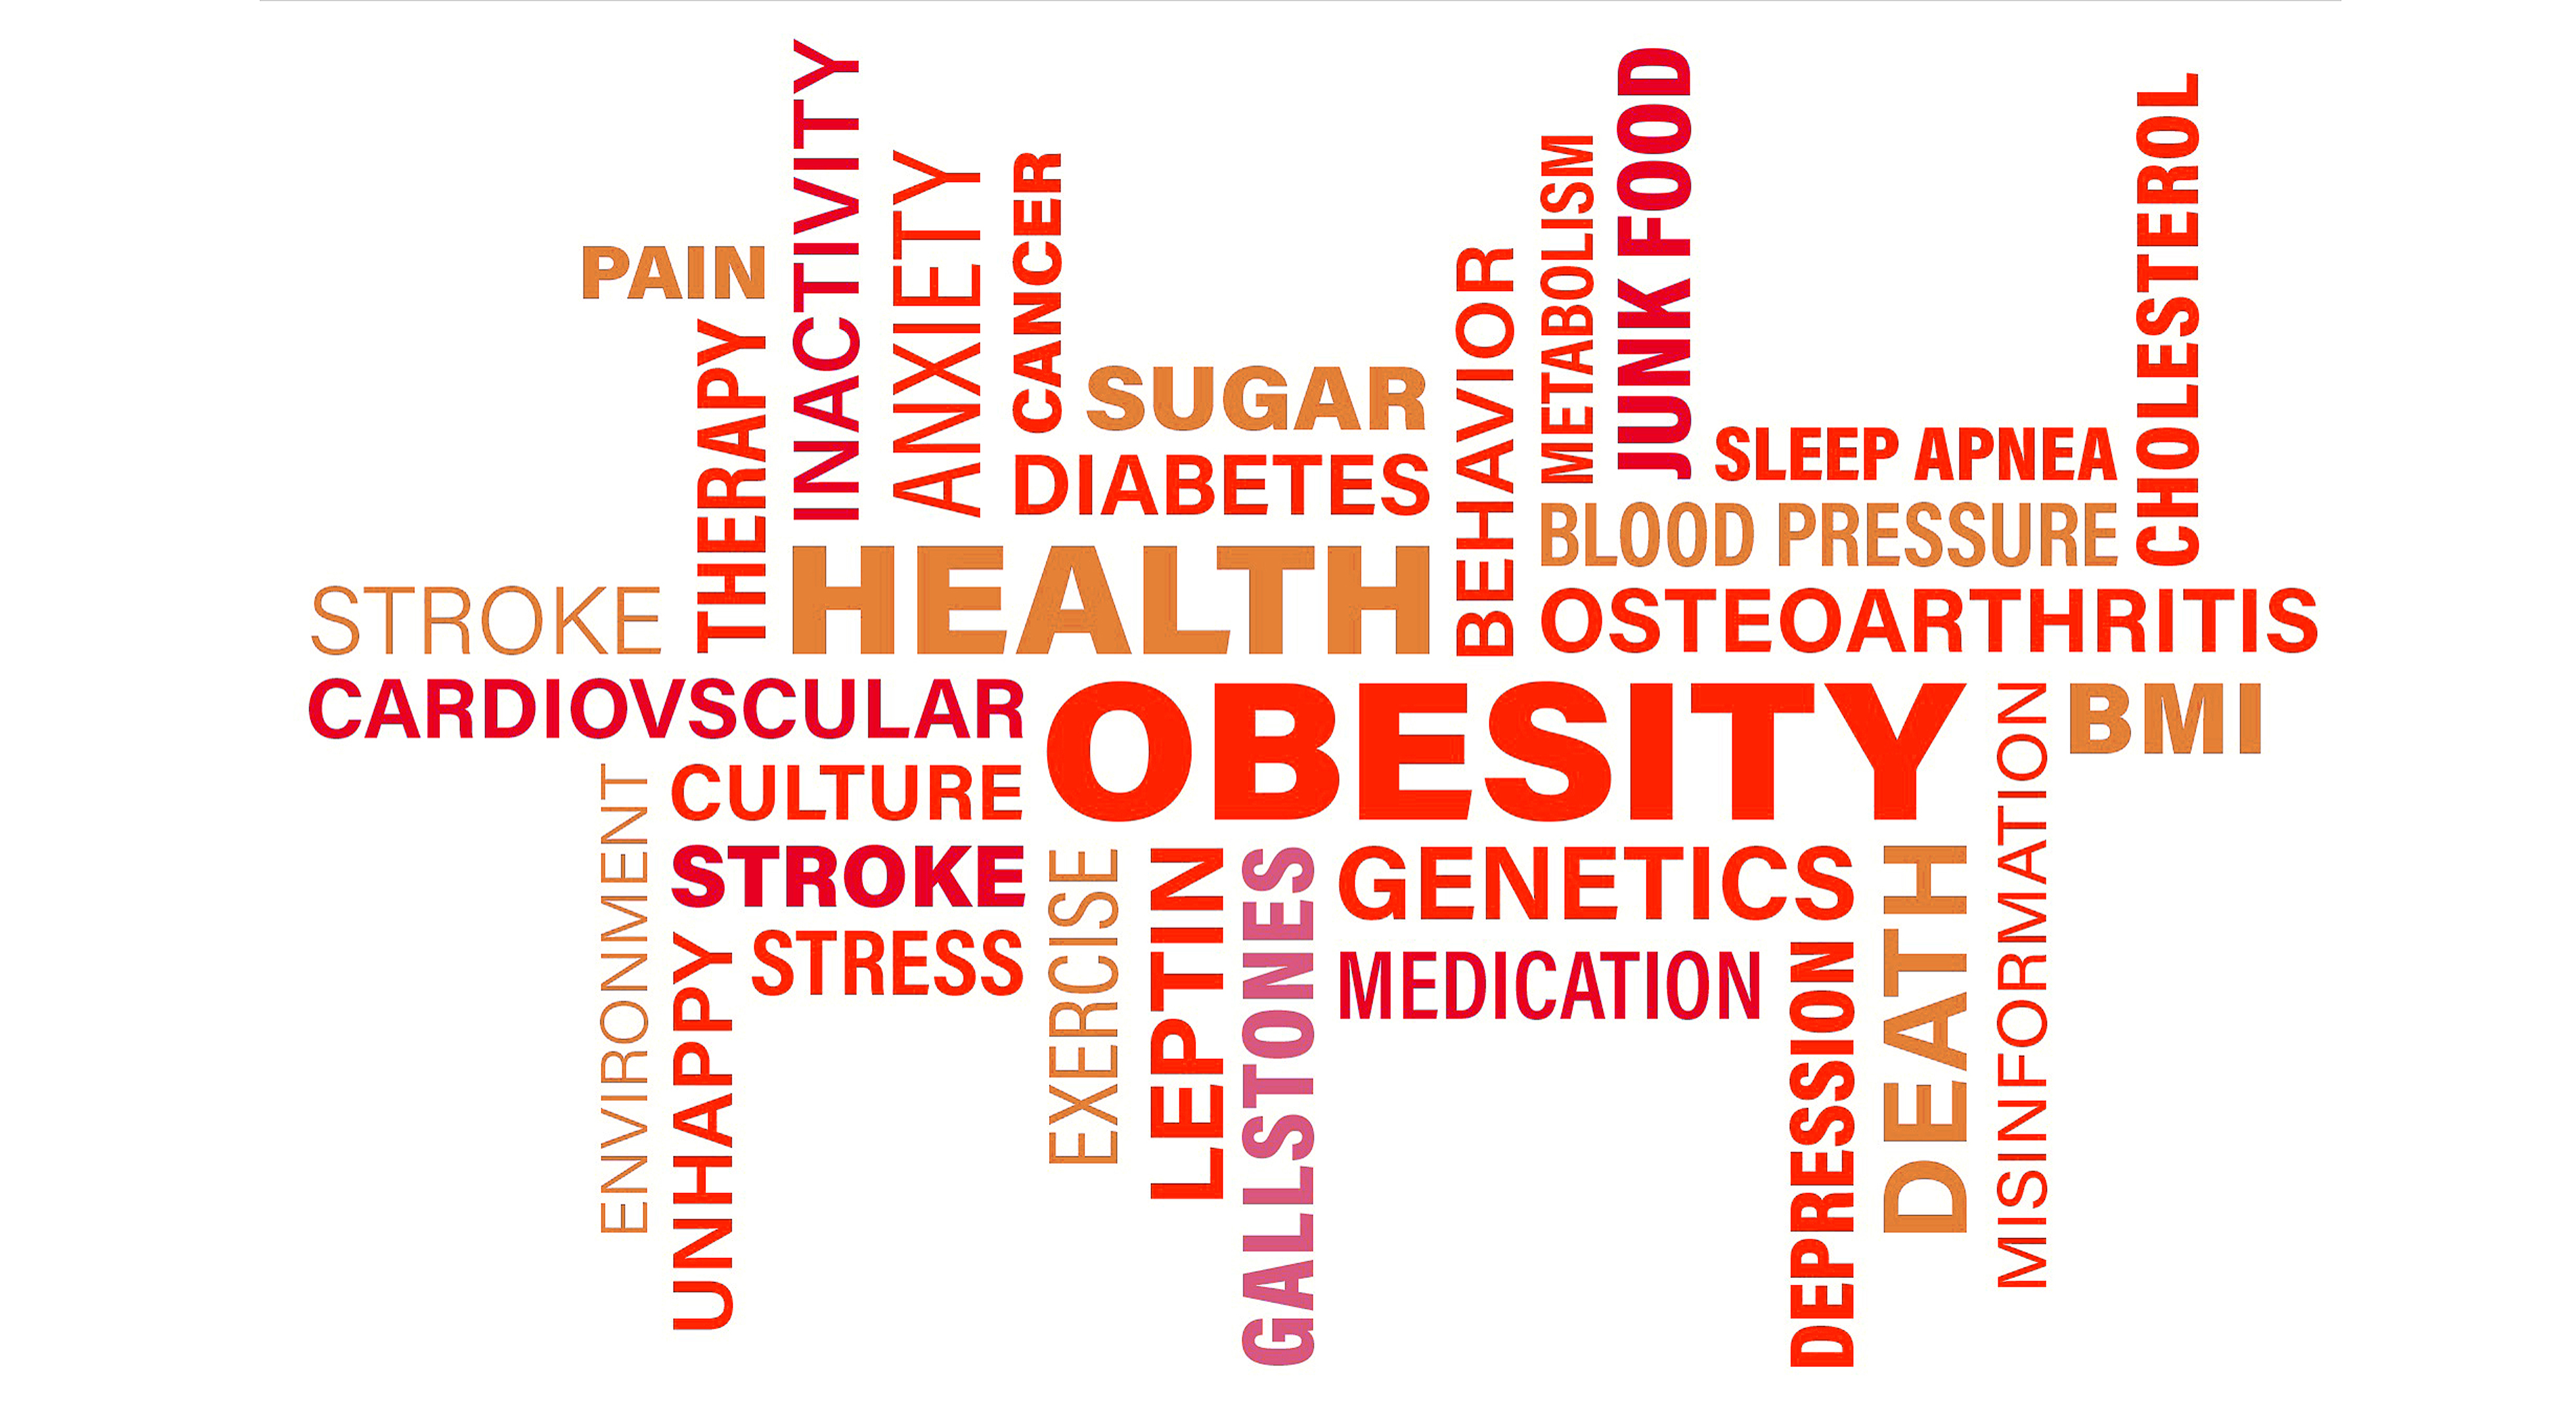 ¿Cuándo se diagnostica la obesidad?